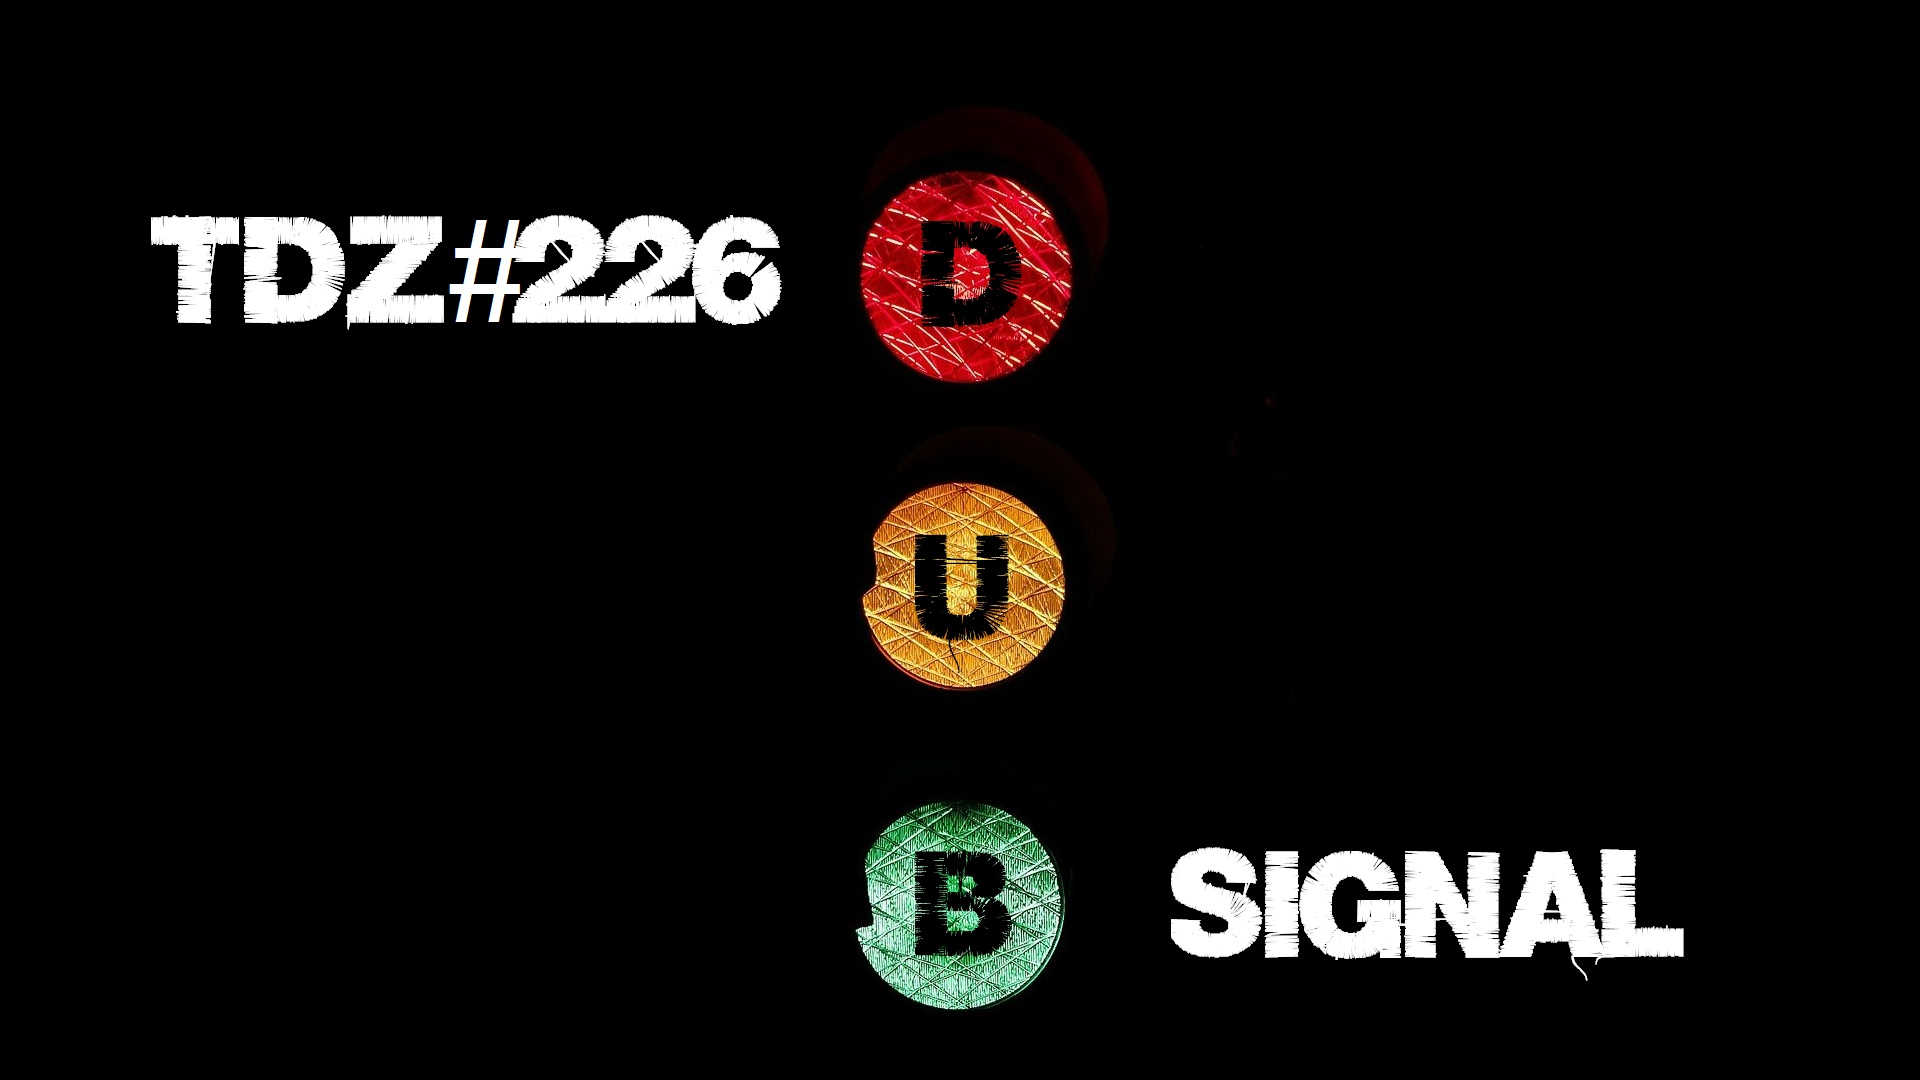 TDZ#226... Dub Signal.....